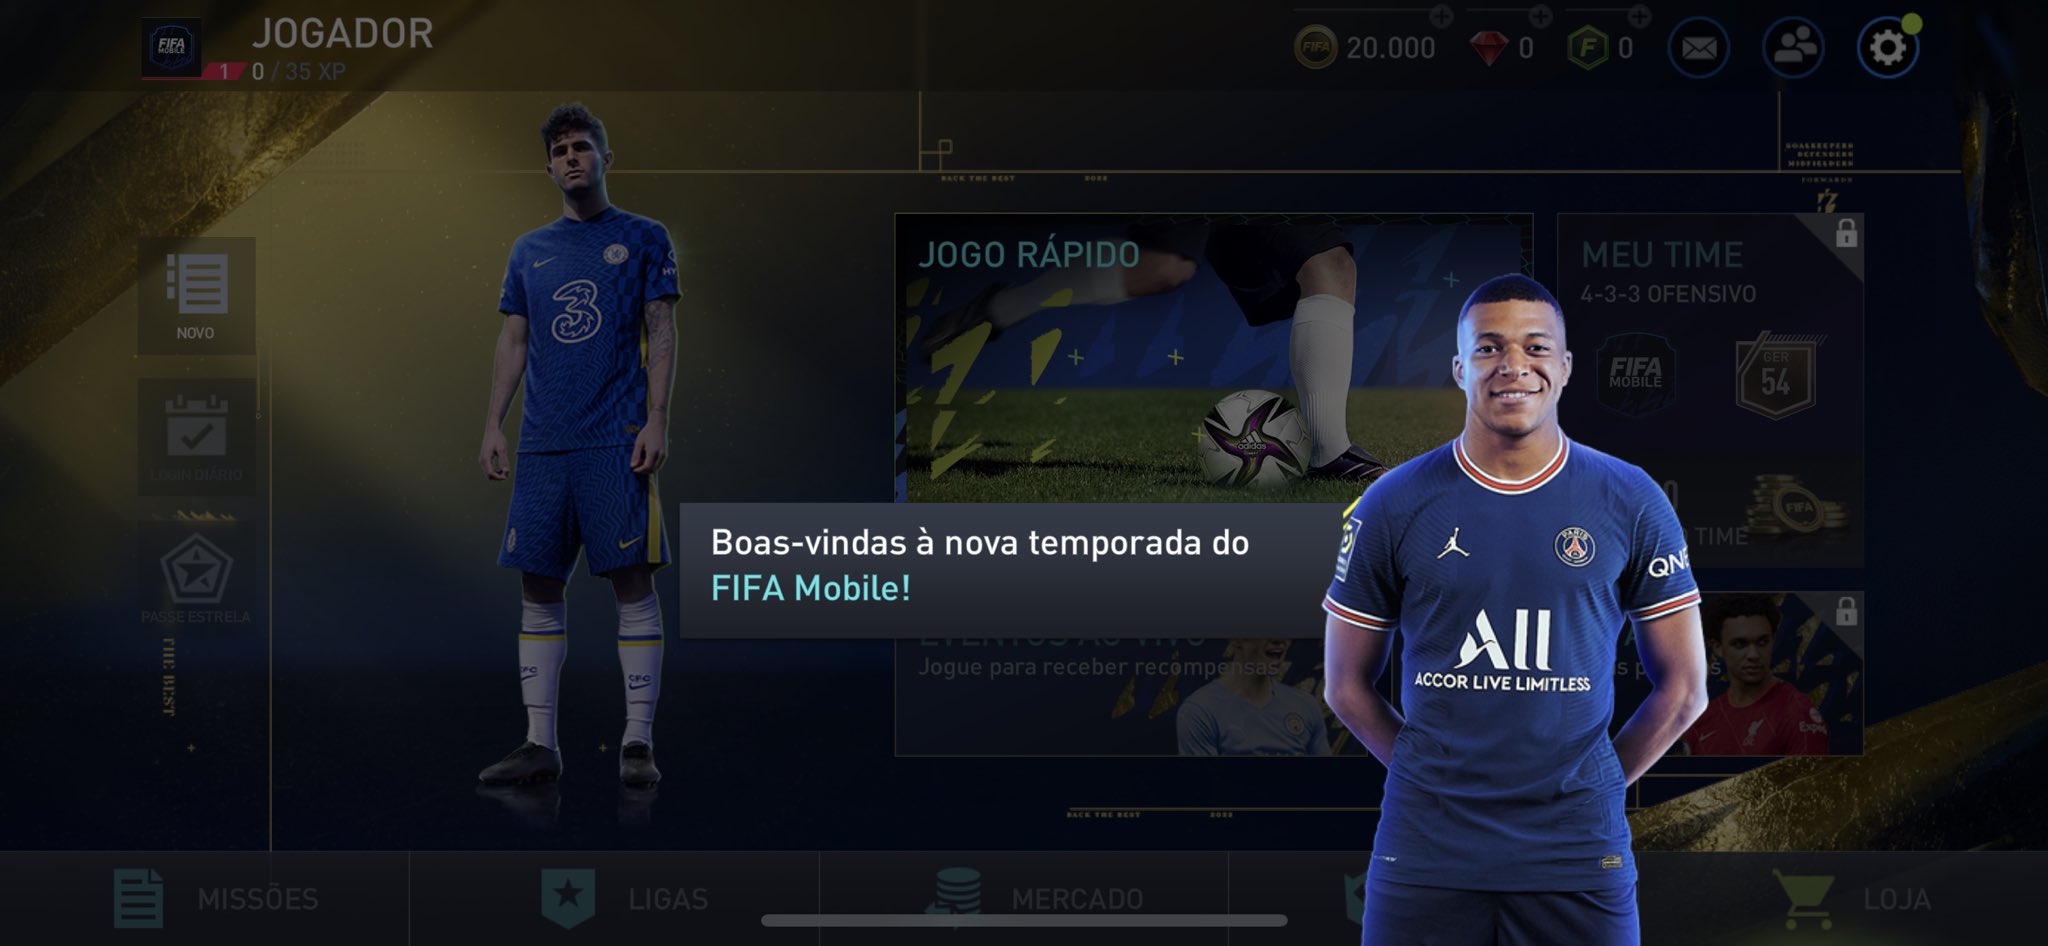 FIFA Mobile é atualizado com modo de jogo a 60 fps, narração em